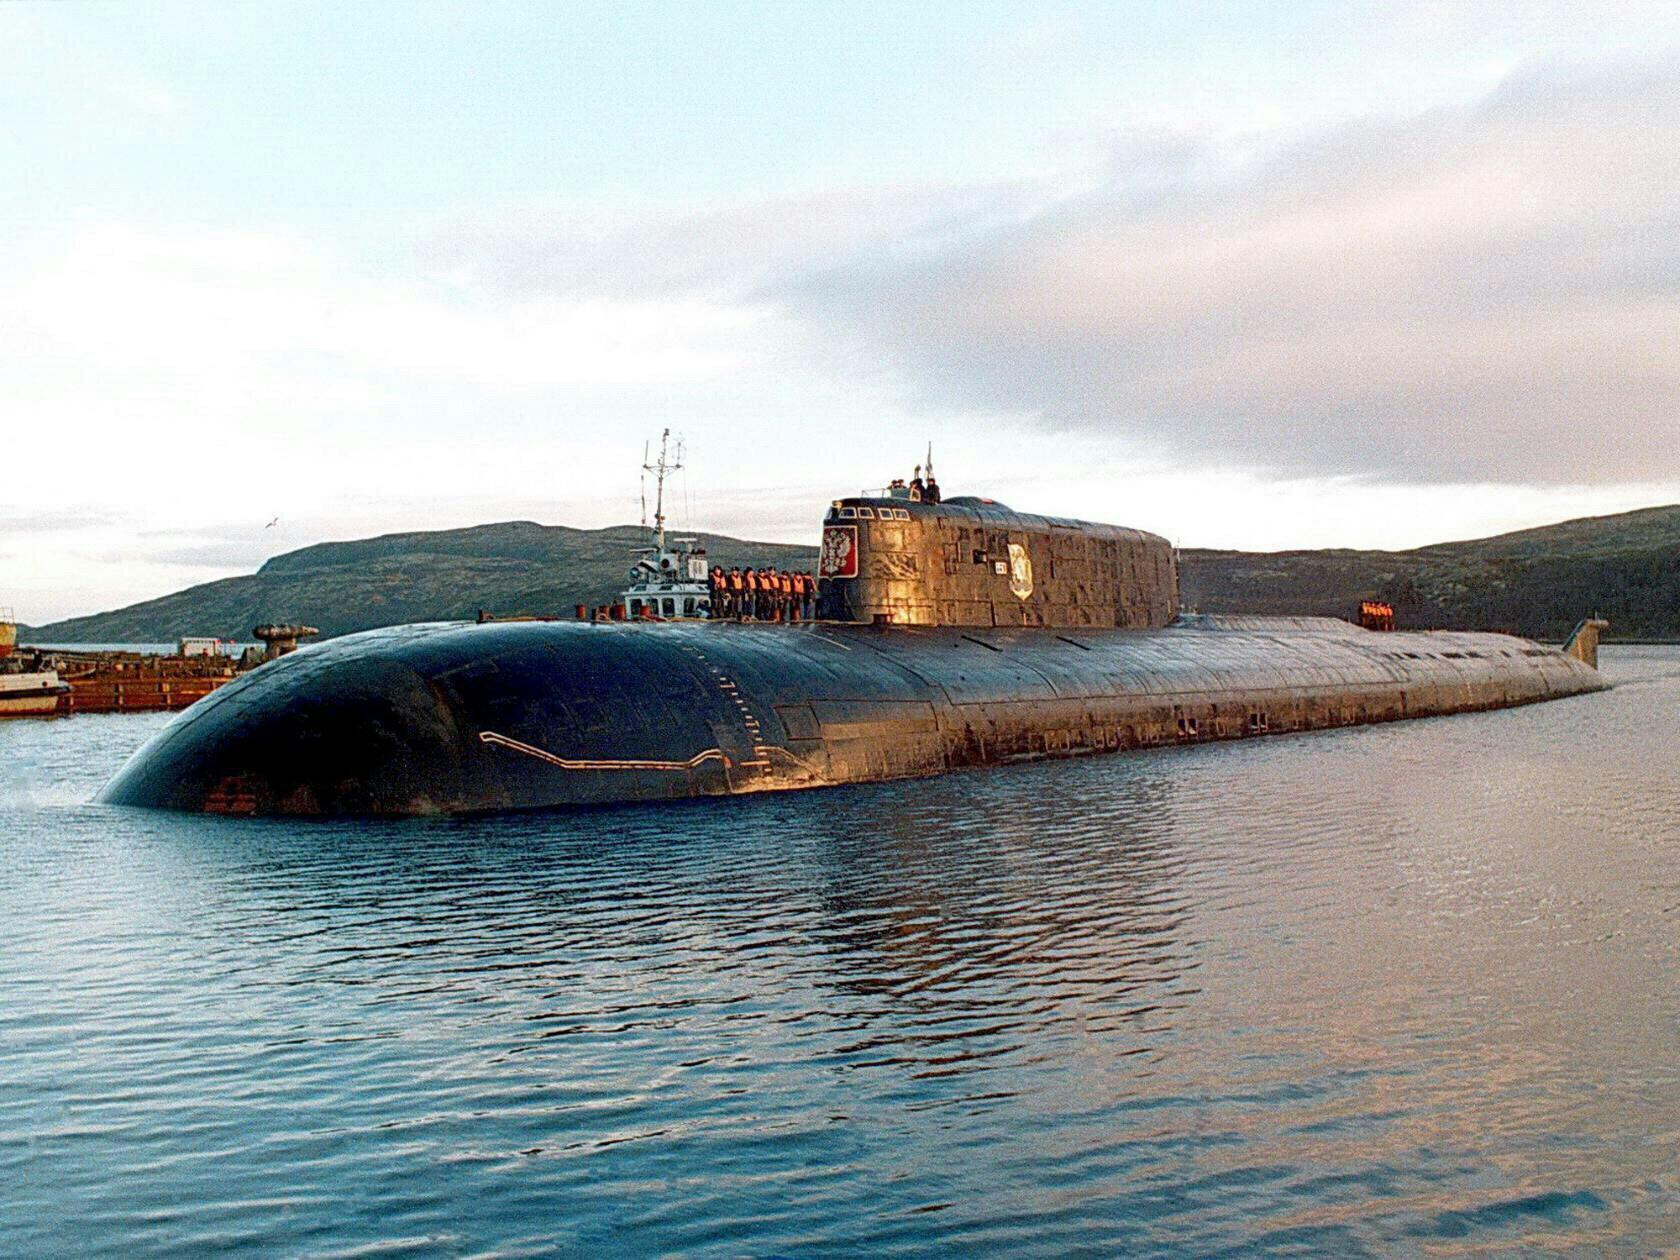 Пл й. Лодка к-141 «Курск». АПЛ К 141. К-141 подводная лодка. Атомная подводная лодка Курск.